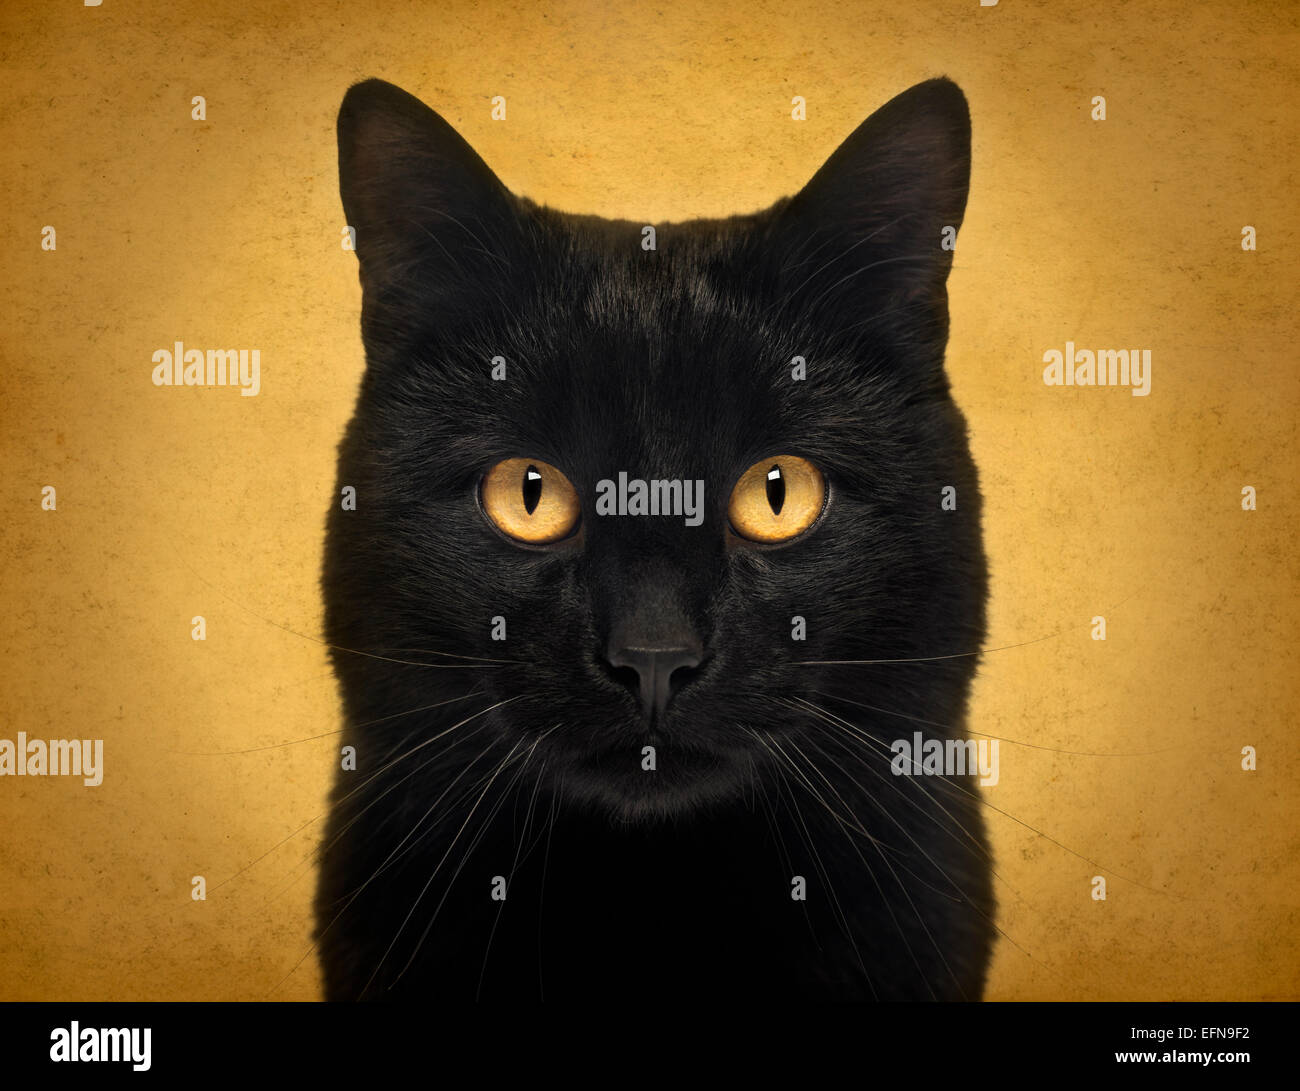 Close-up of a Black Cat regardant la caméra, sur fond jaune Banque D'Images